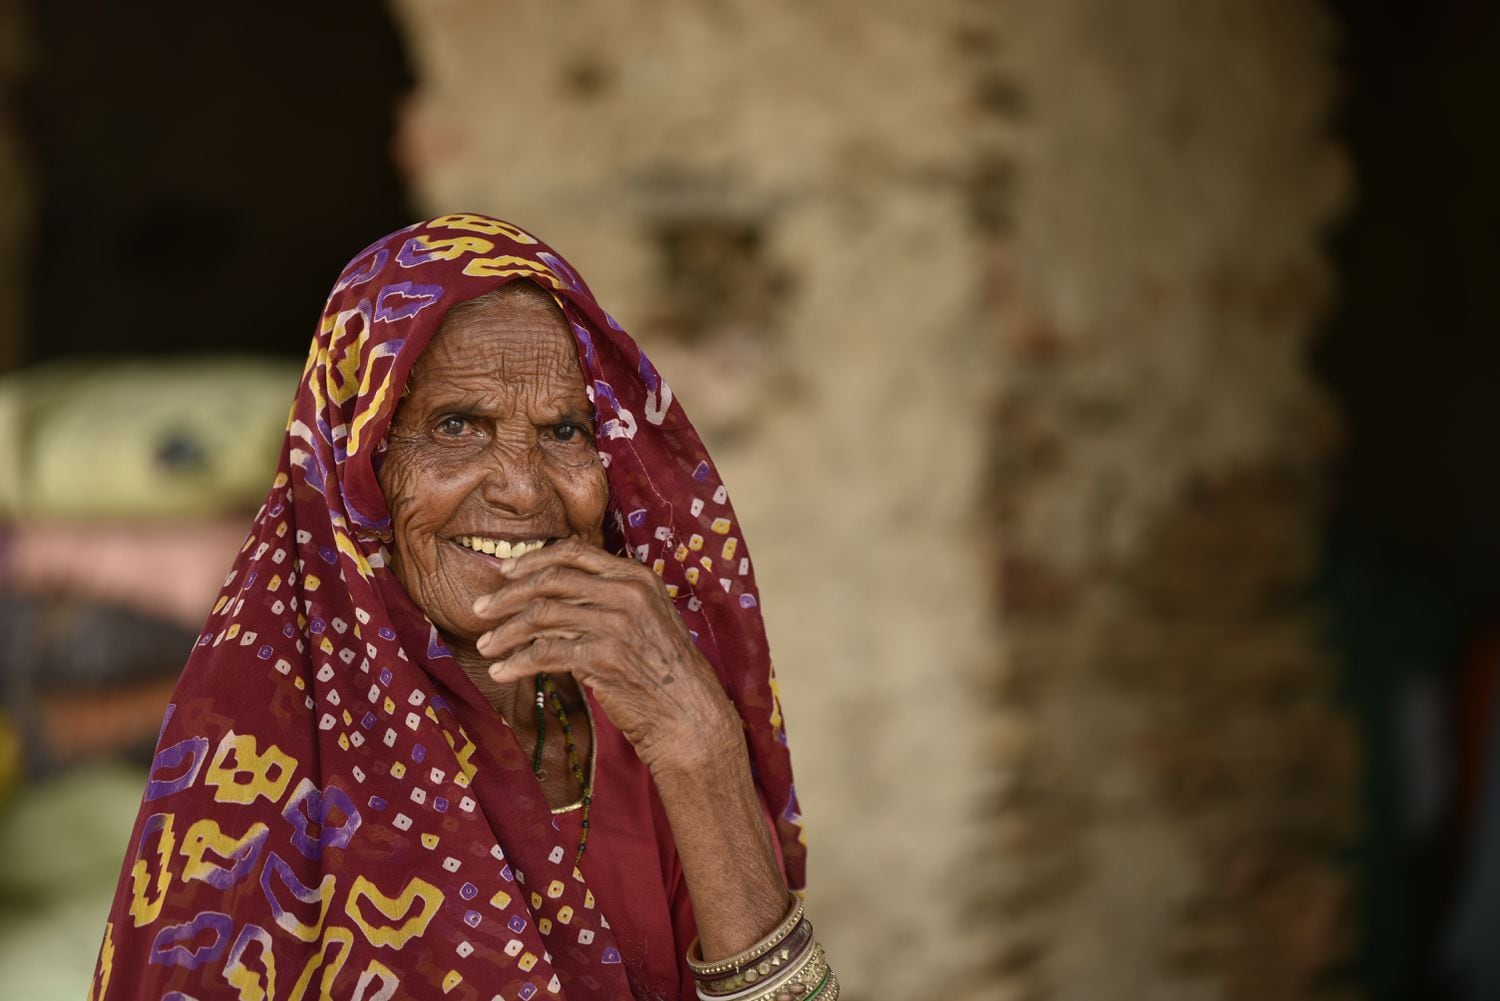 Una anciana sonríe. Uttar Pradesh, India. Pincha en la imagen para ver la fotogalería completa.